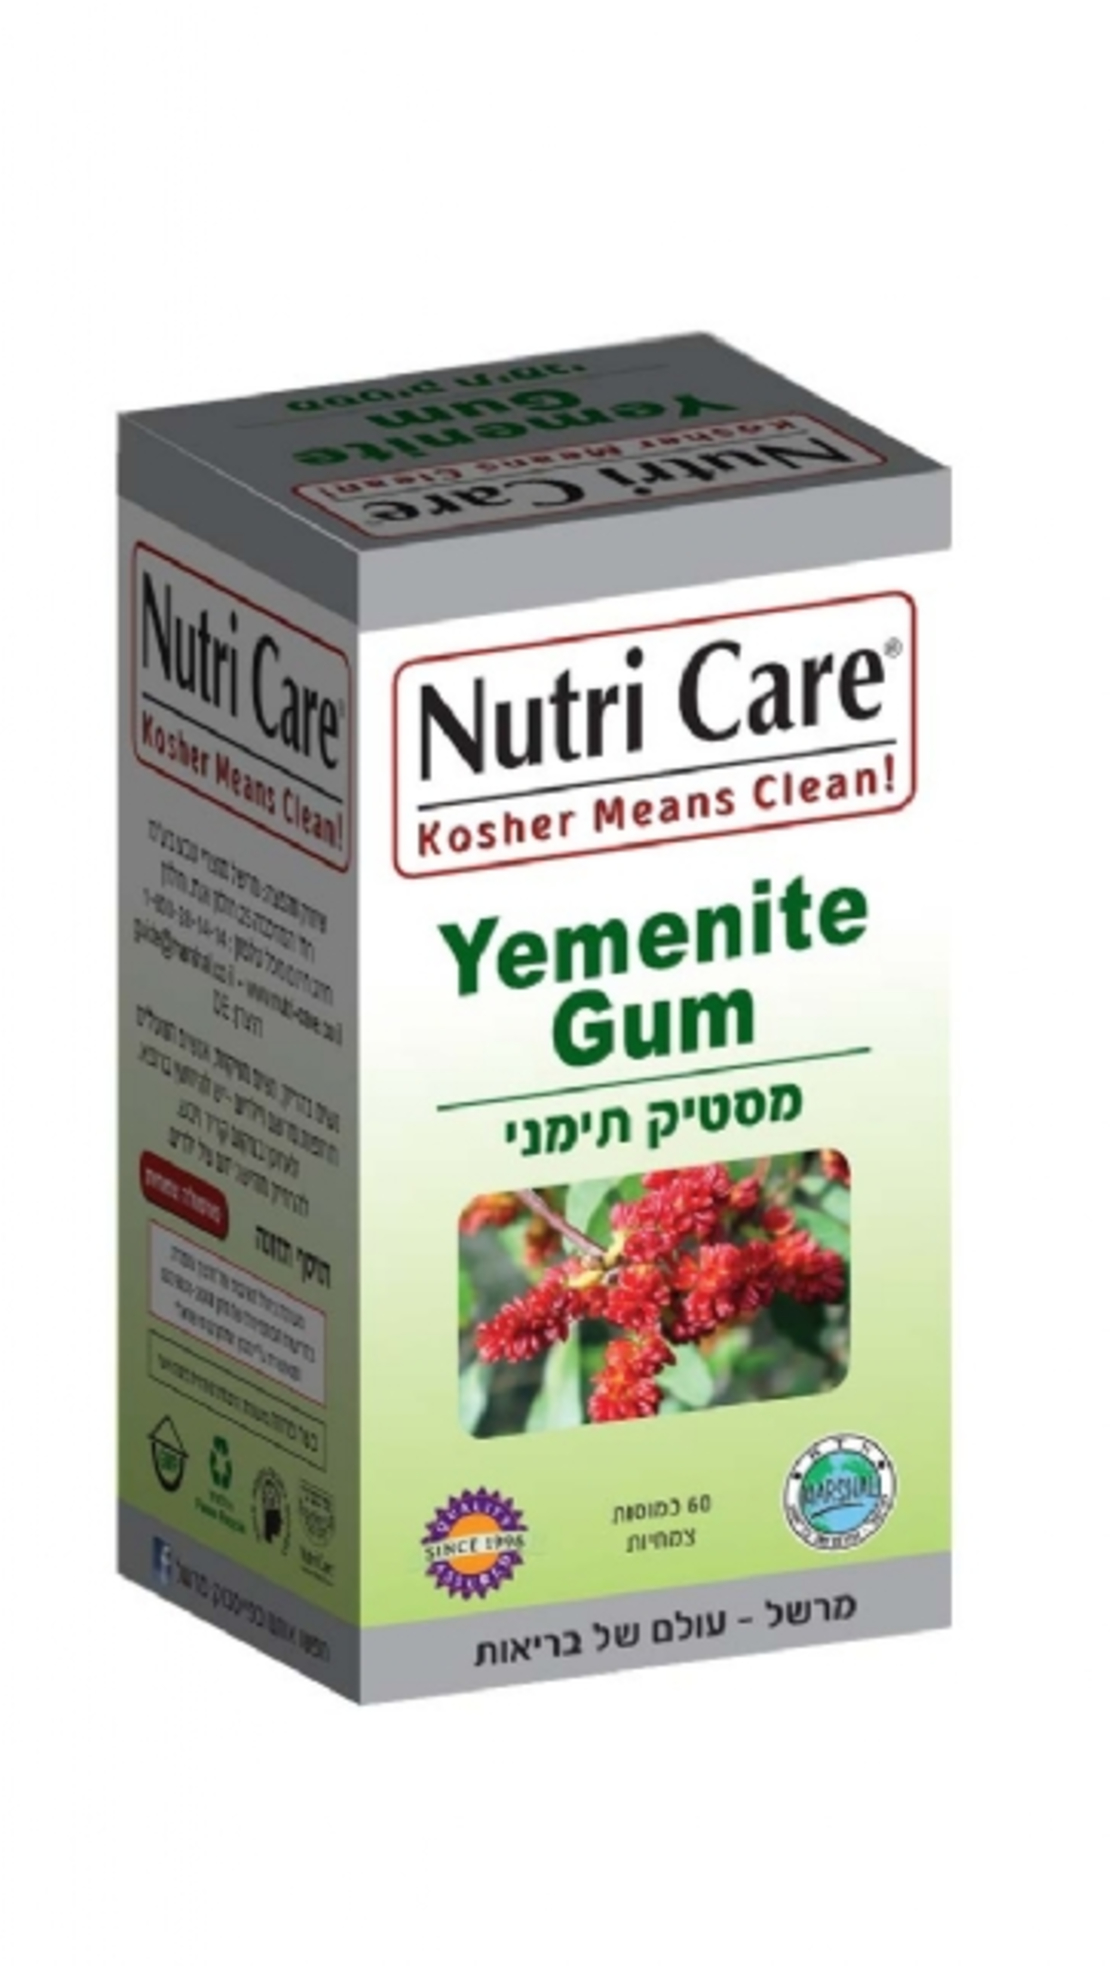 נוטרי קר - מסטיק תימני Nutri Care Yemenite Gum